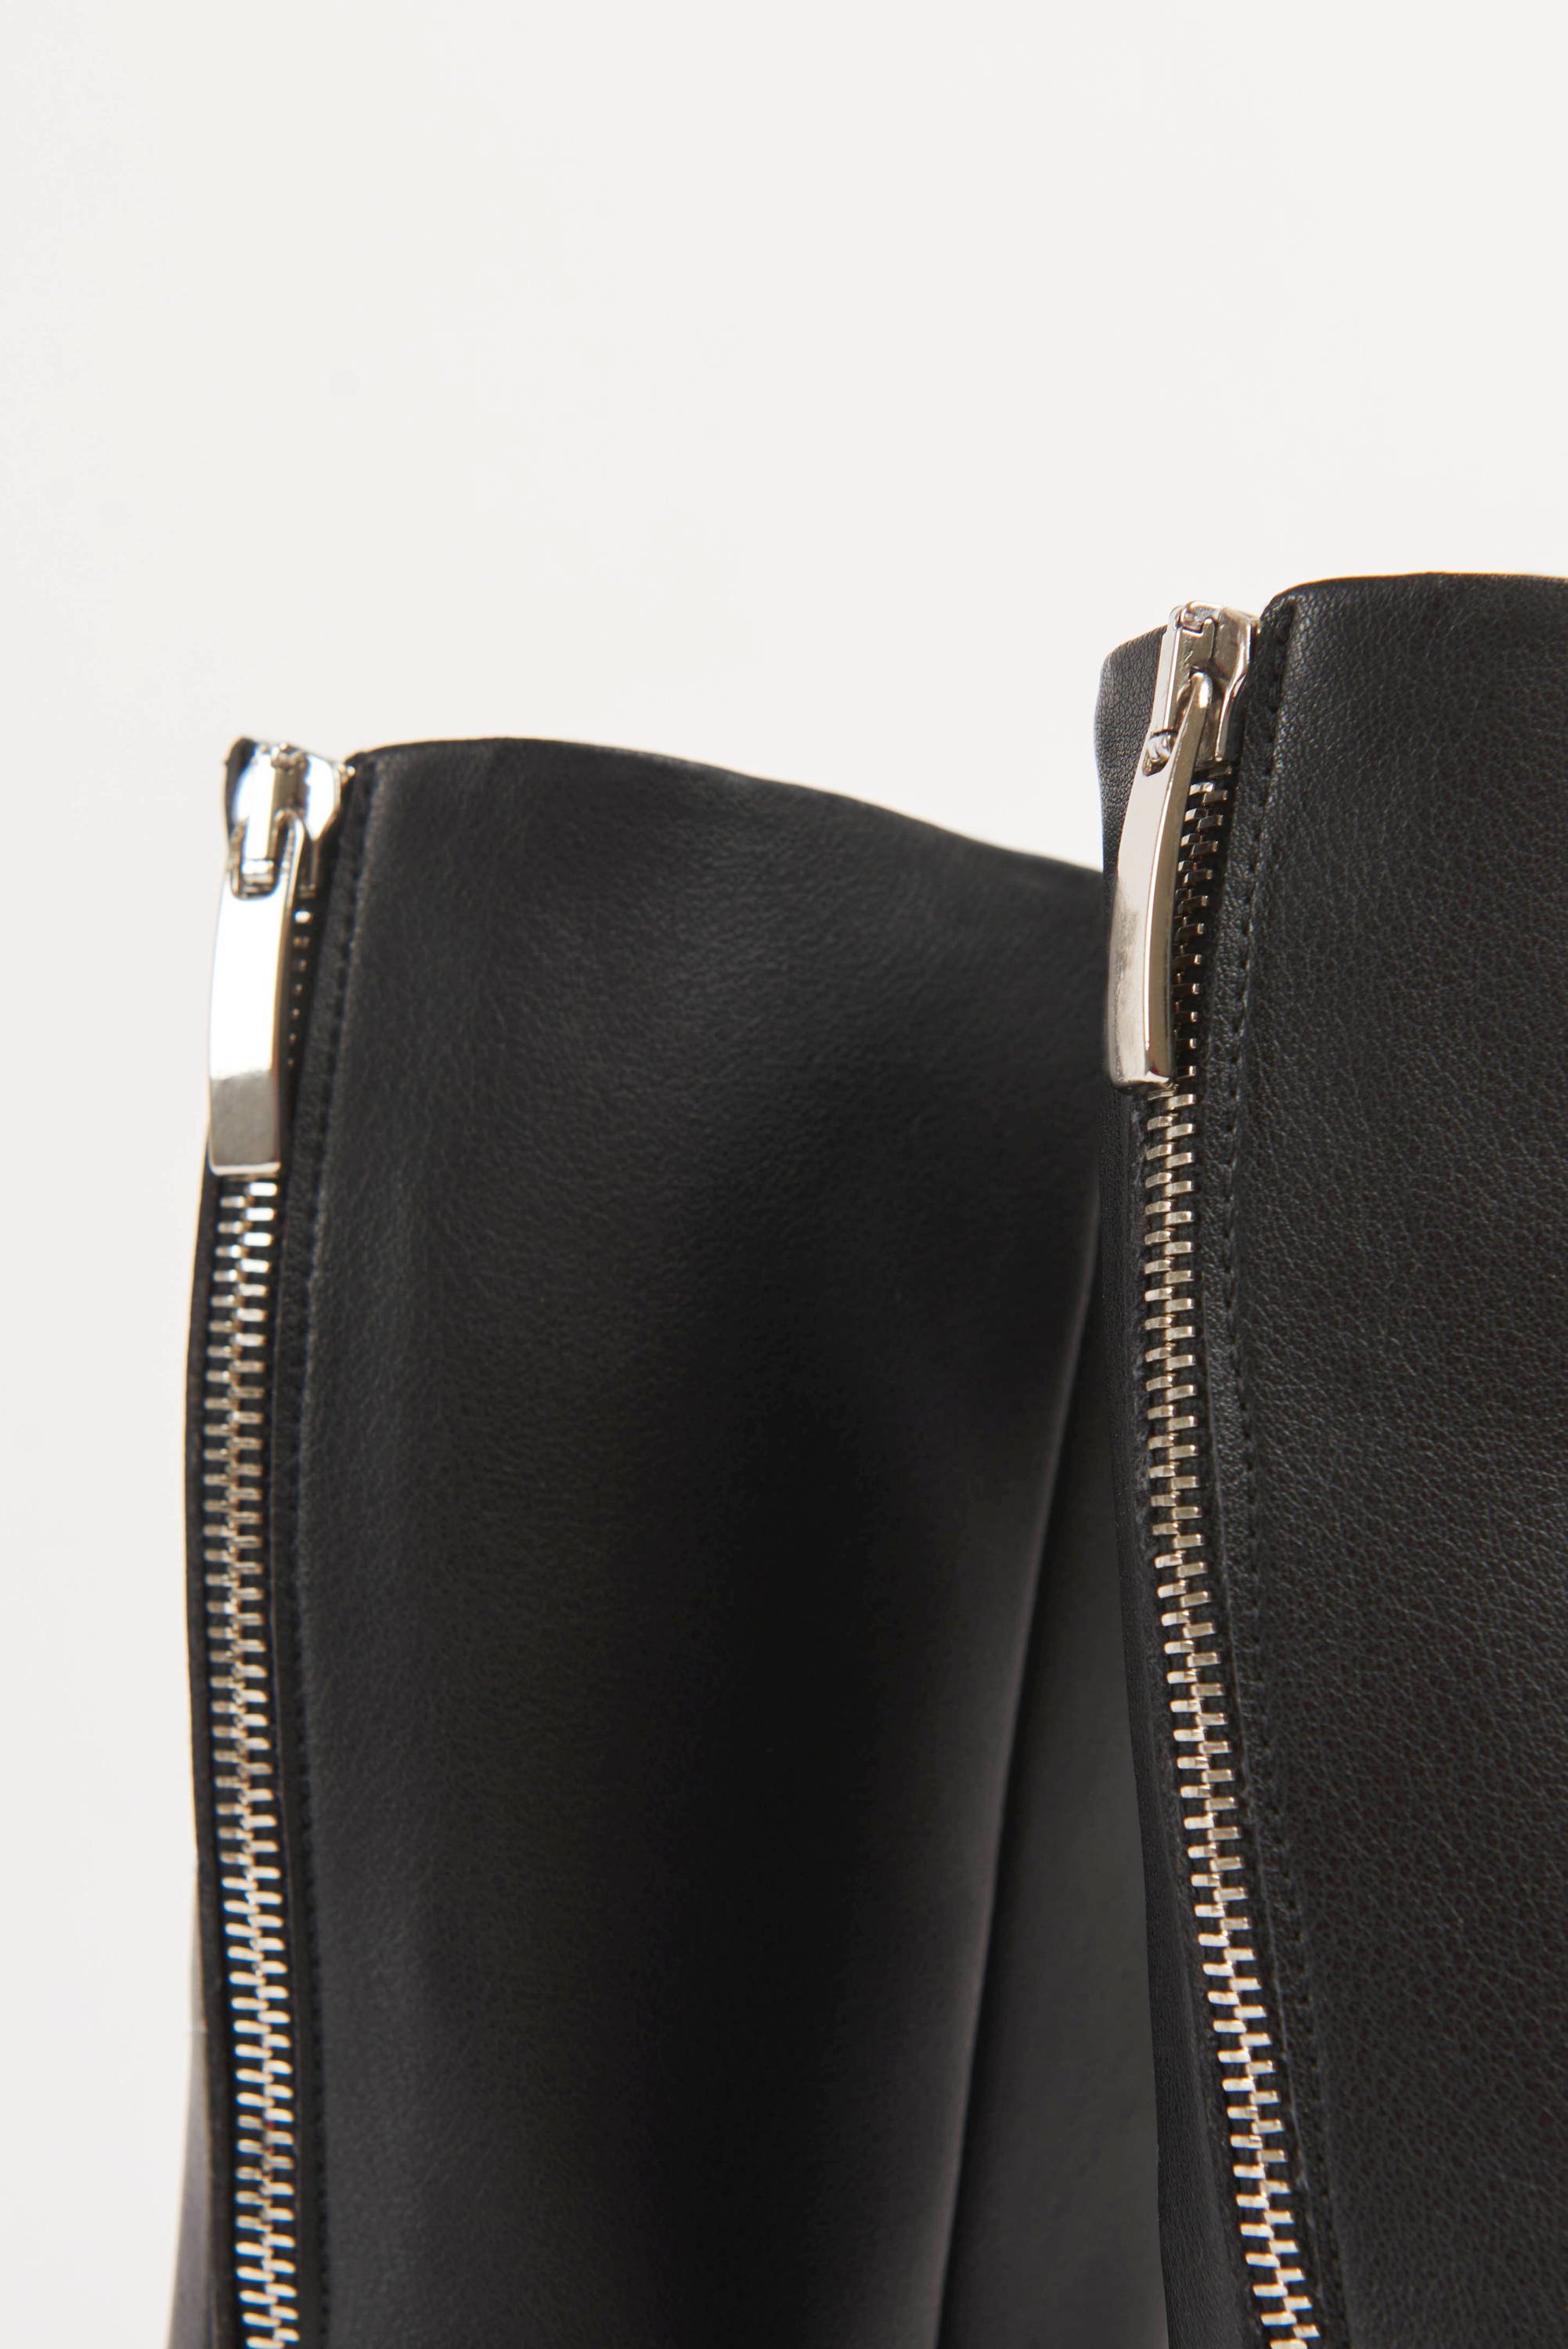 Vandrelaar Greta black ankle boot silver zip detail